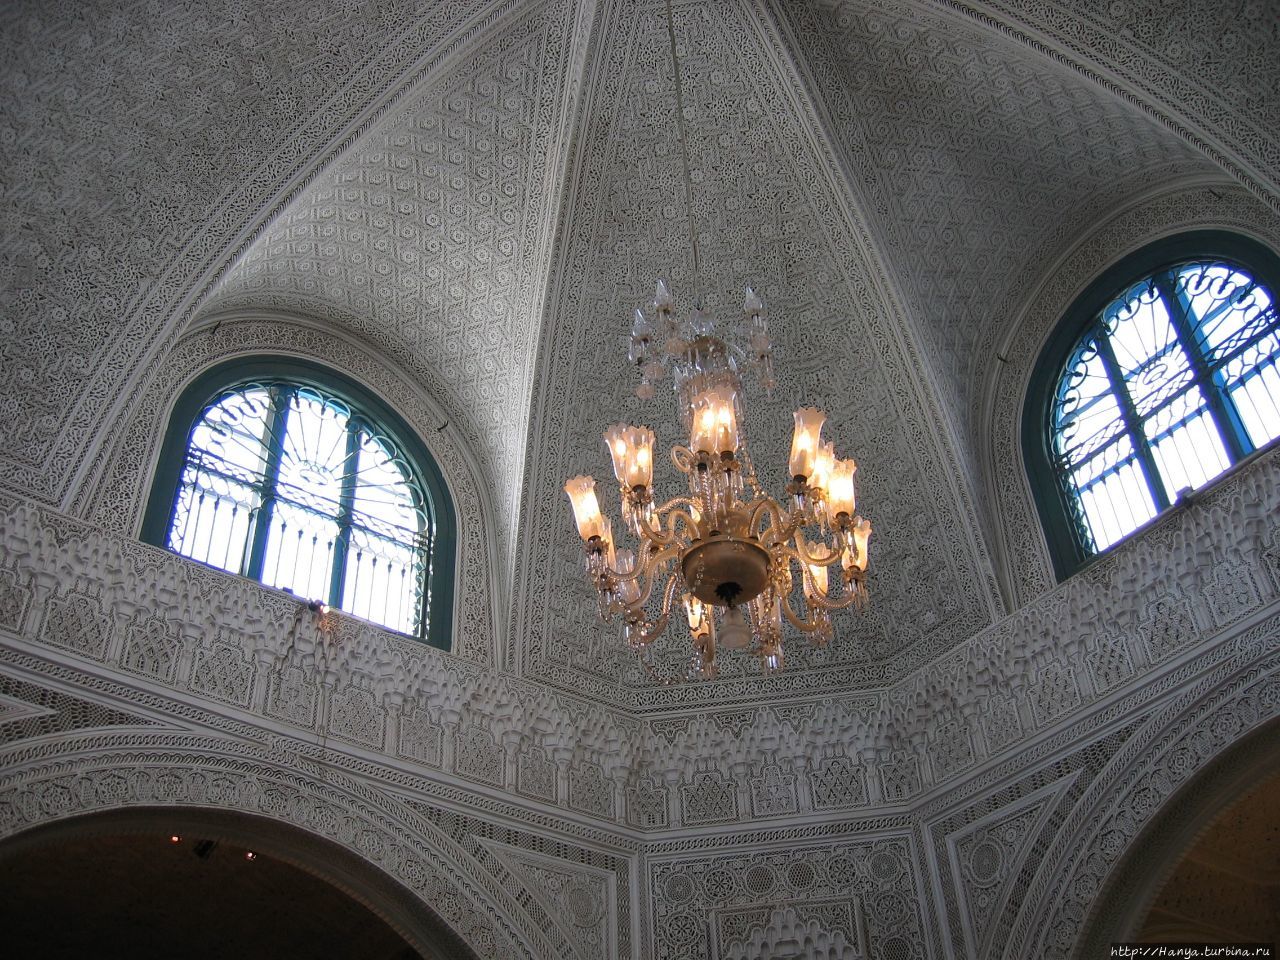 Музей мозаики г. Бардо Сусс, Тунис